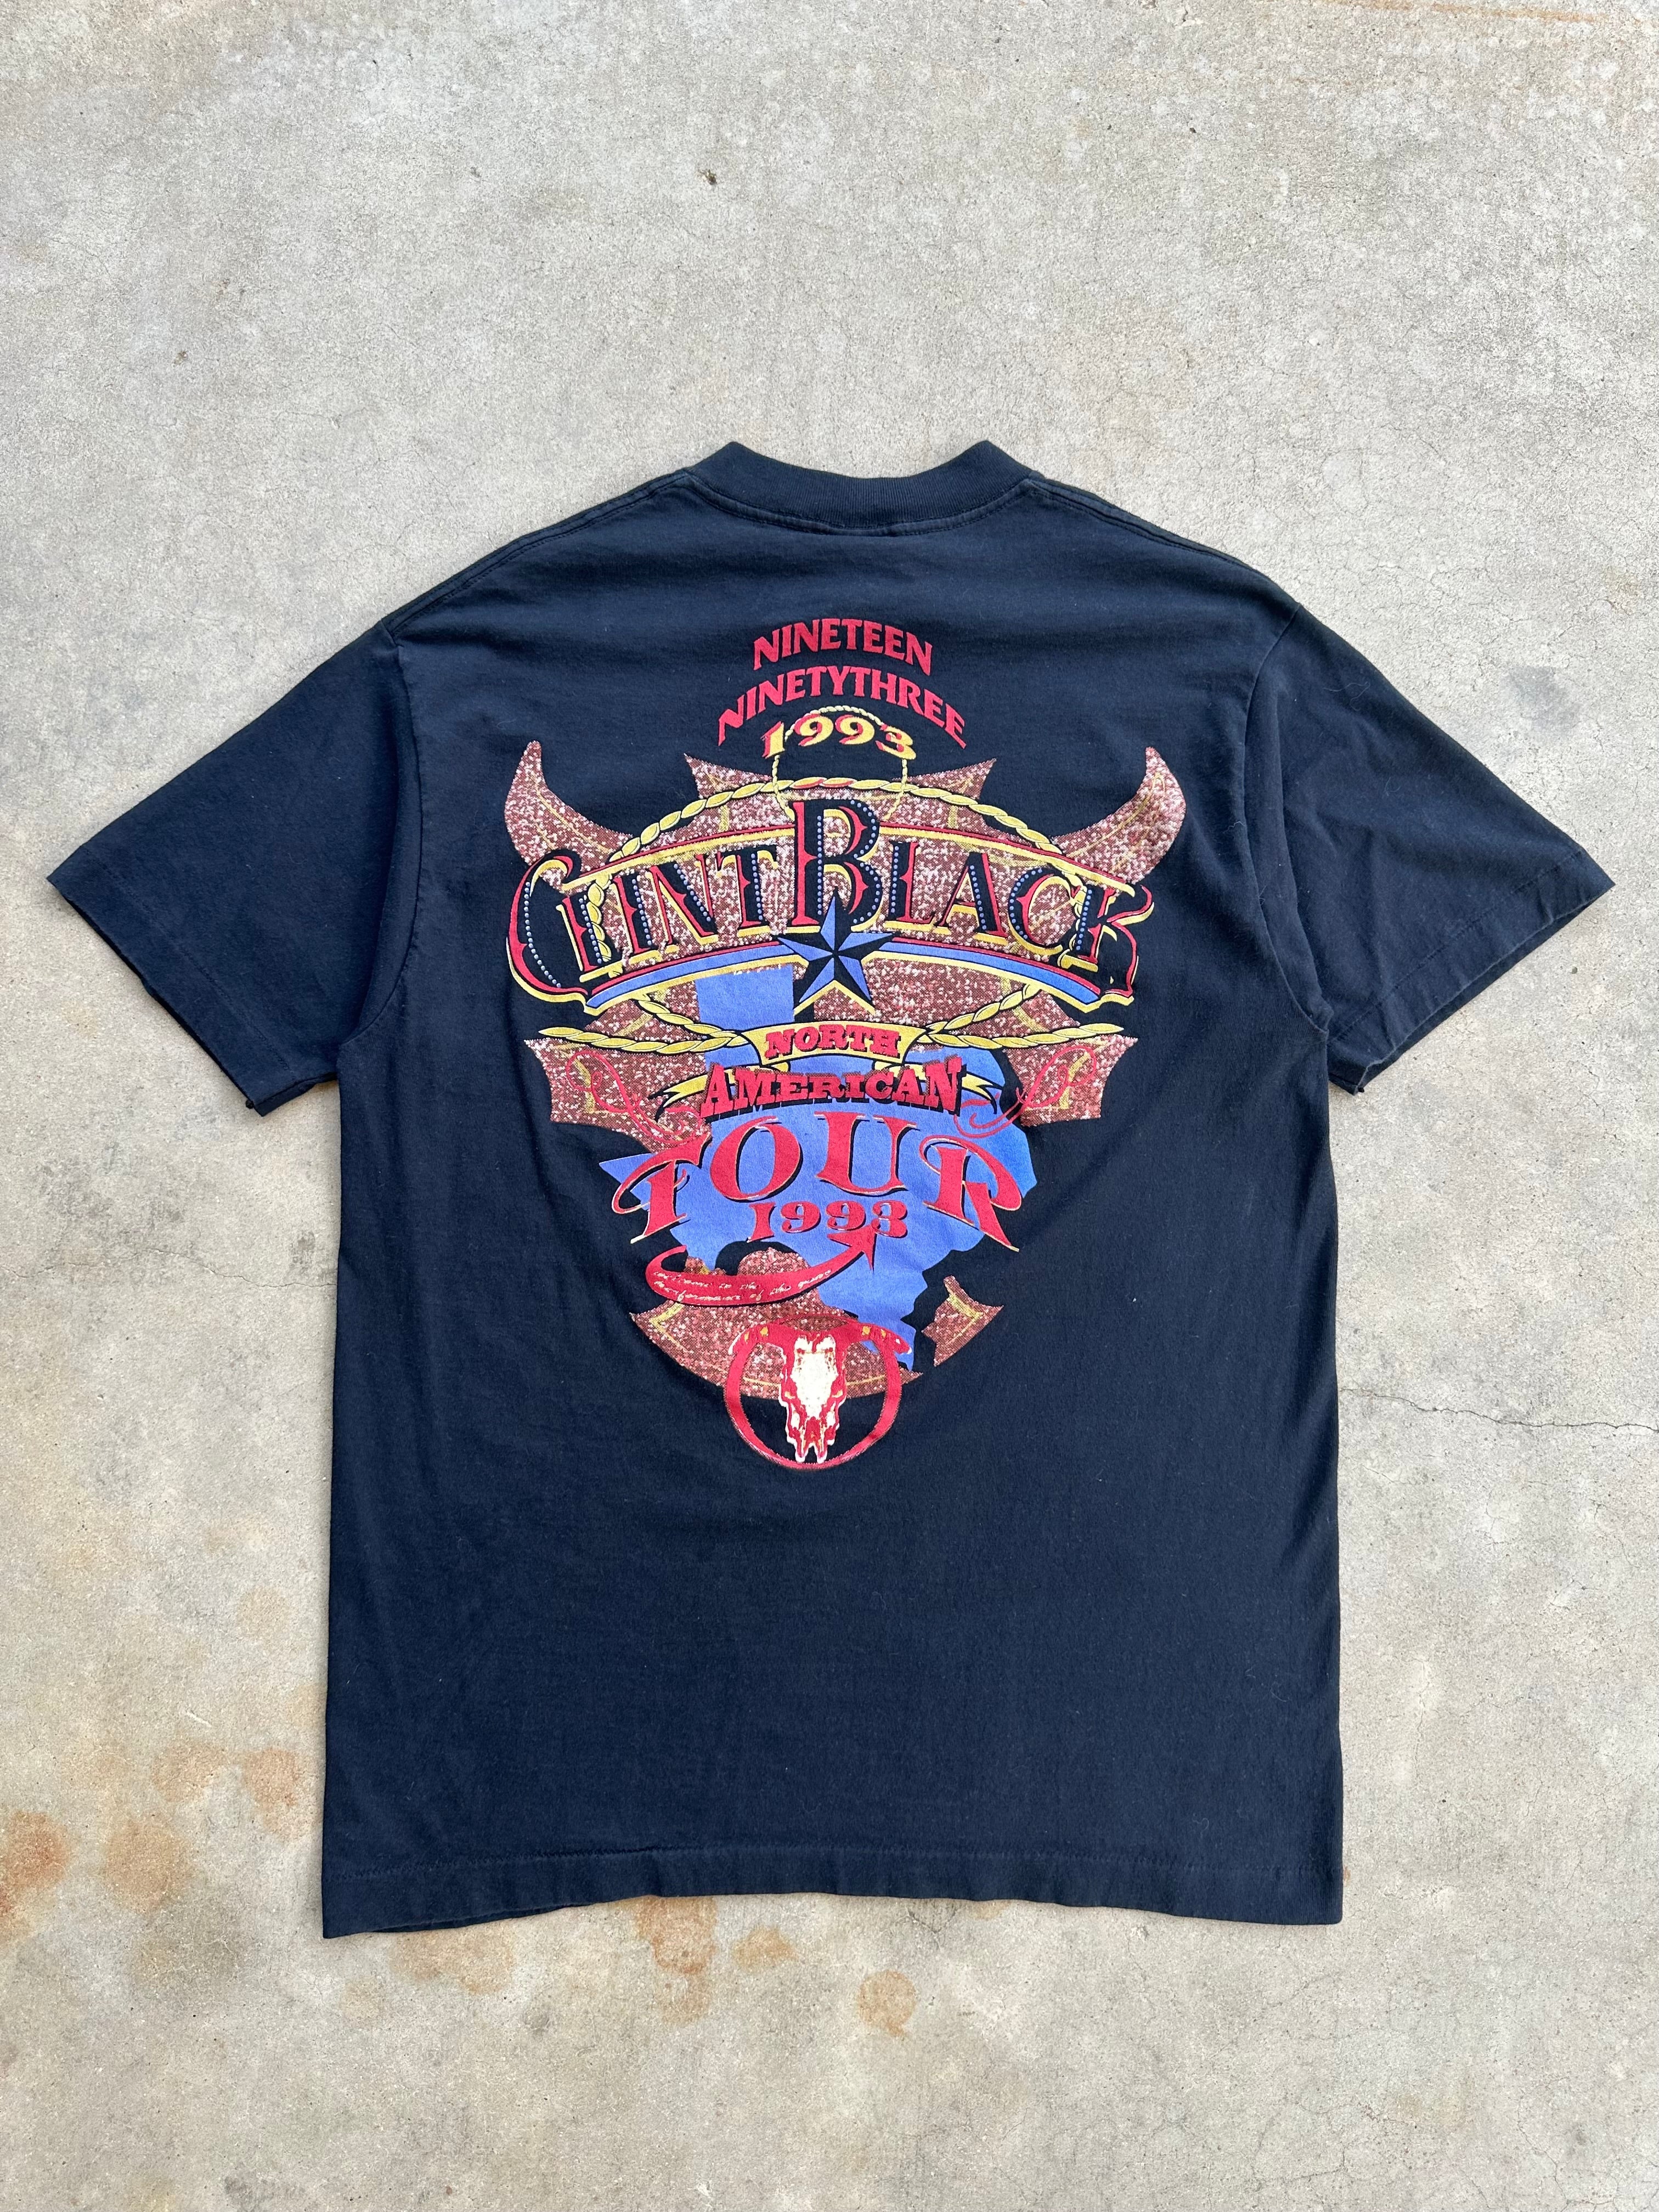 1990’s Clint Black Tour T-Shirt (L)